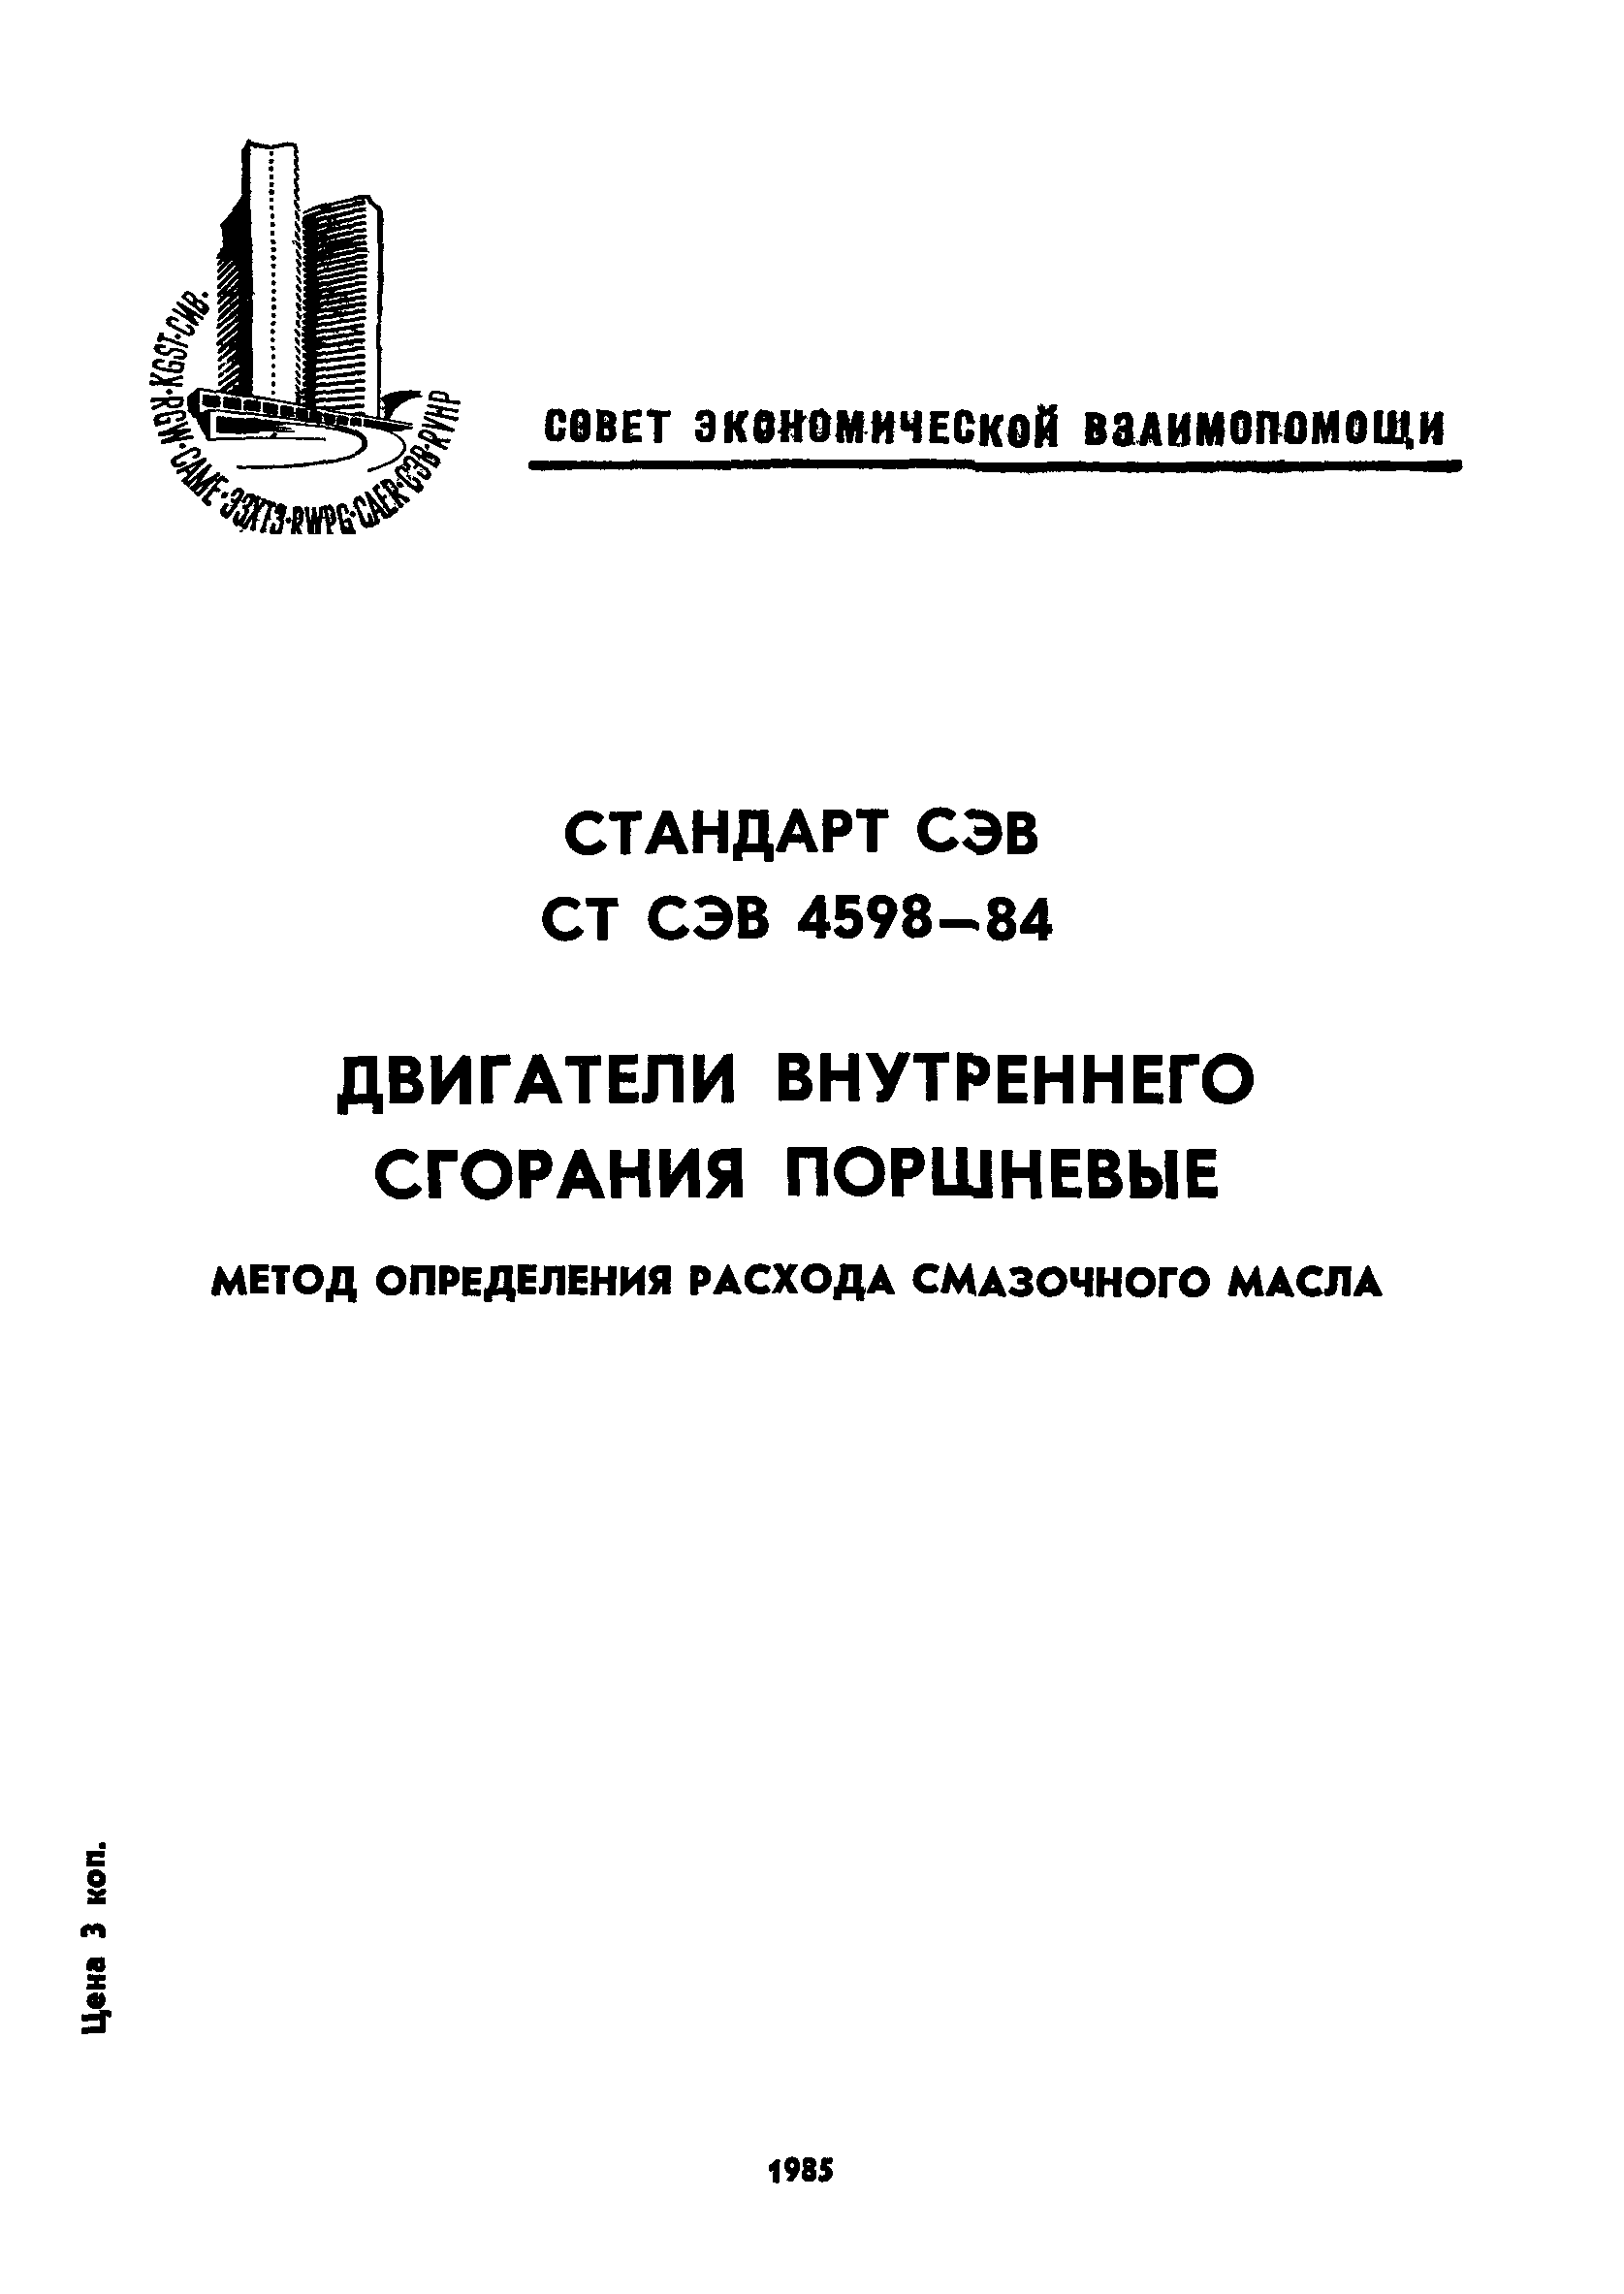 СТ СЭВ 4598-84